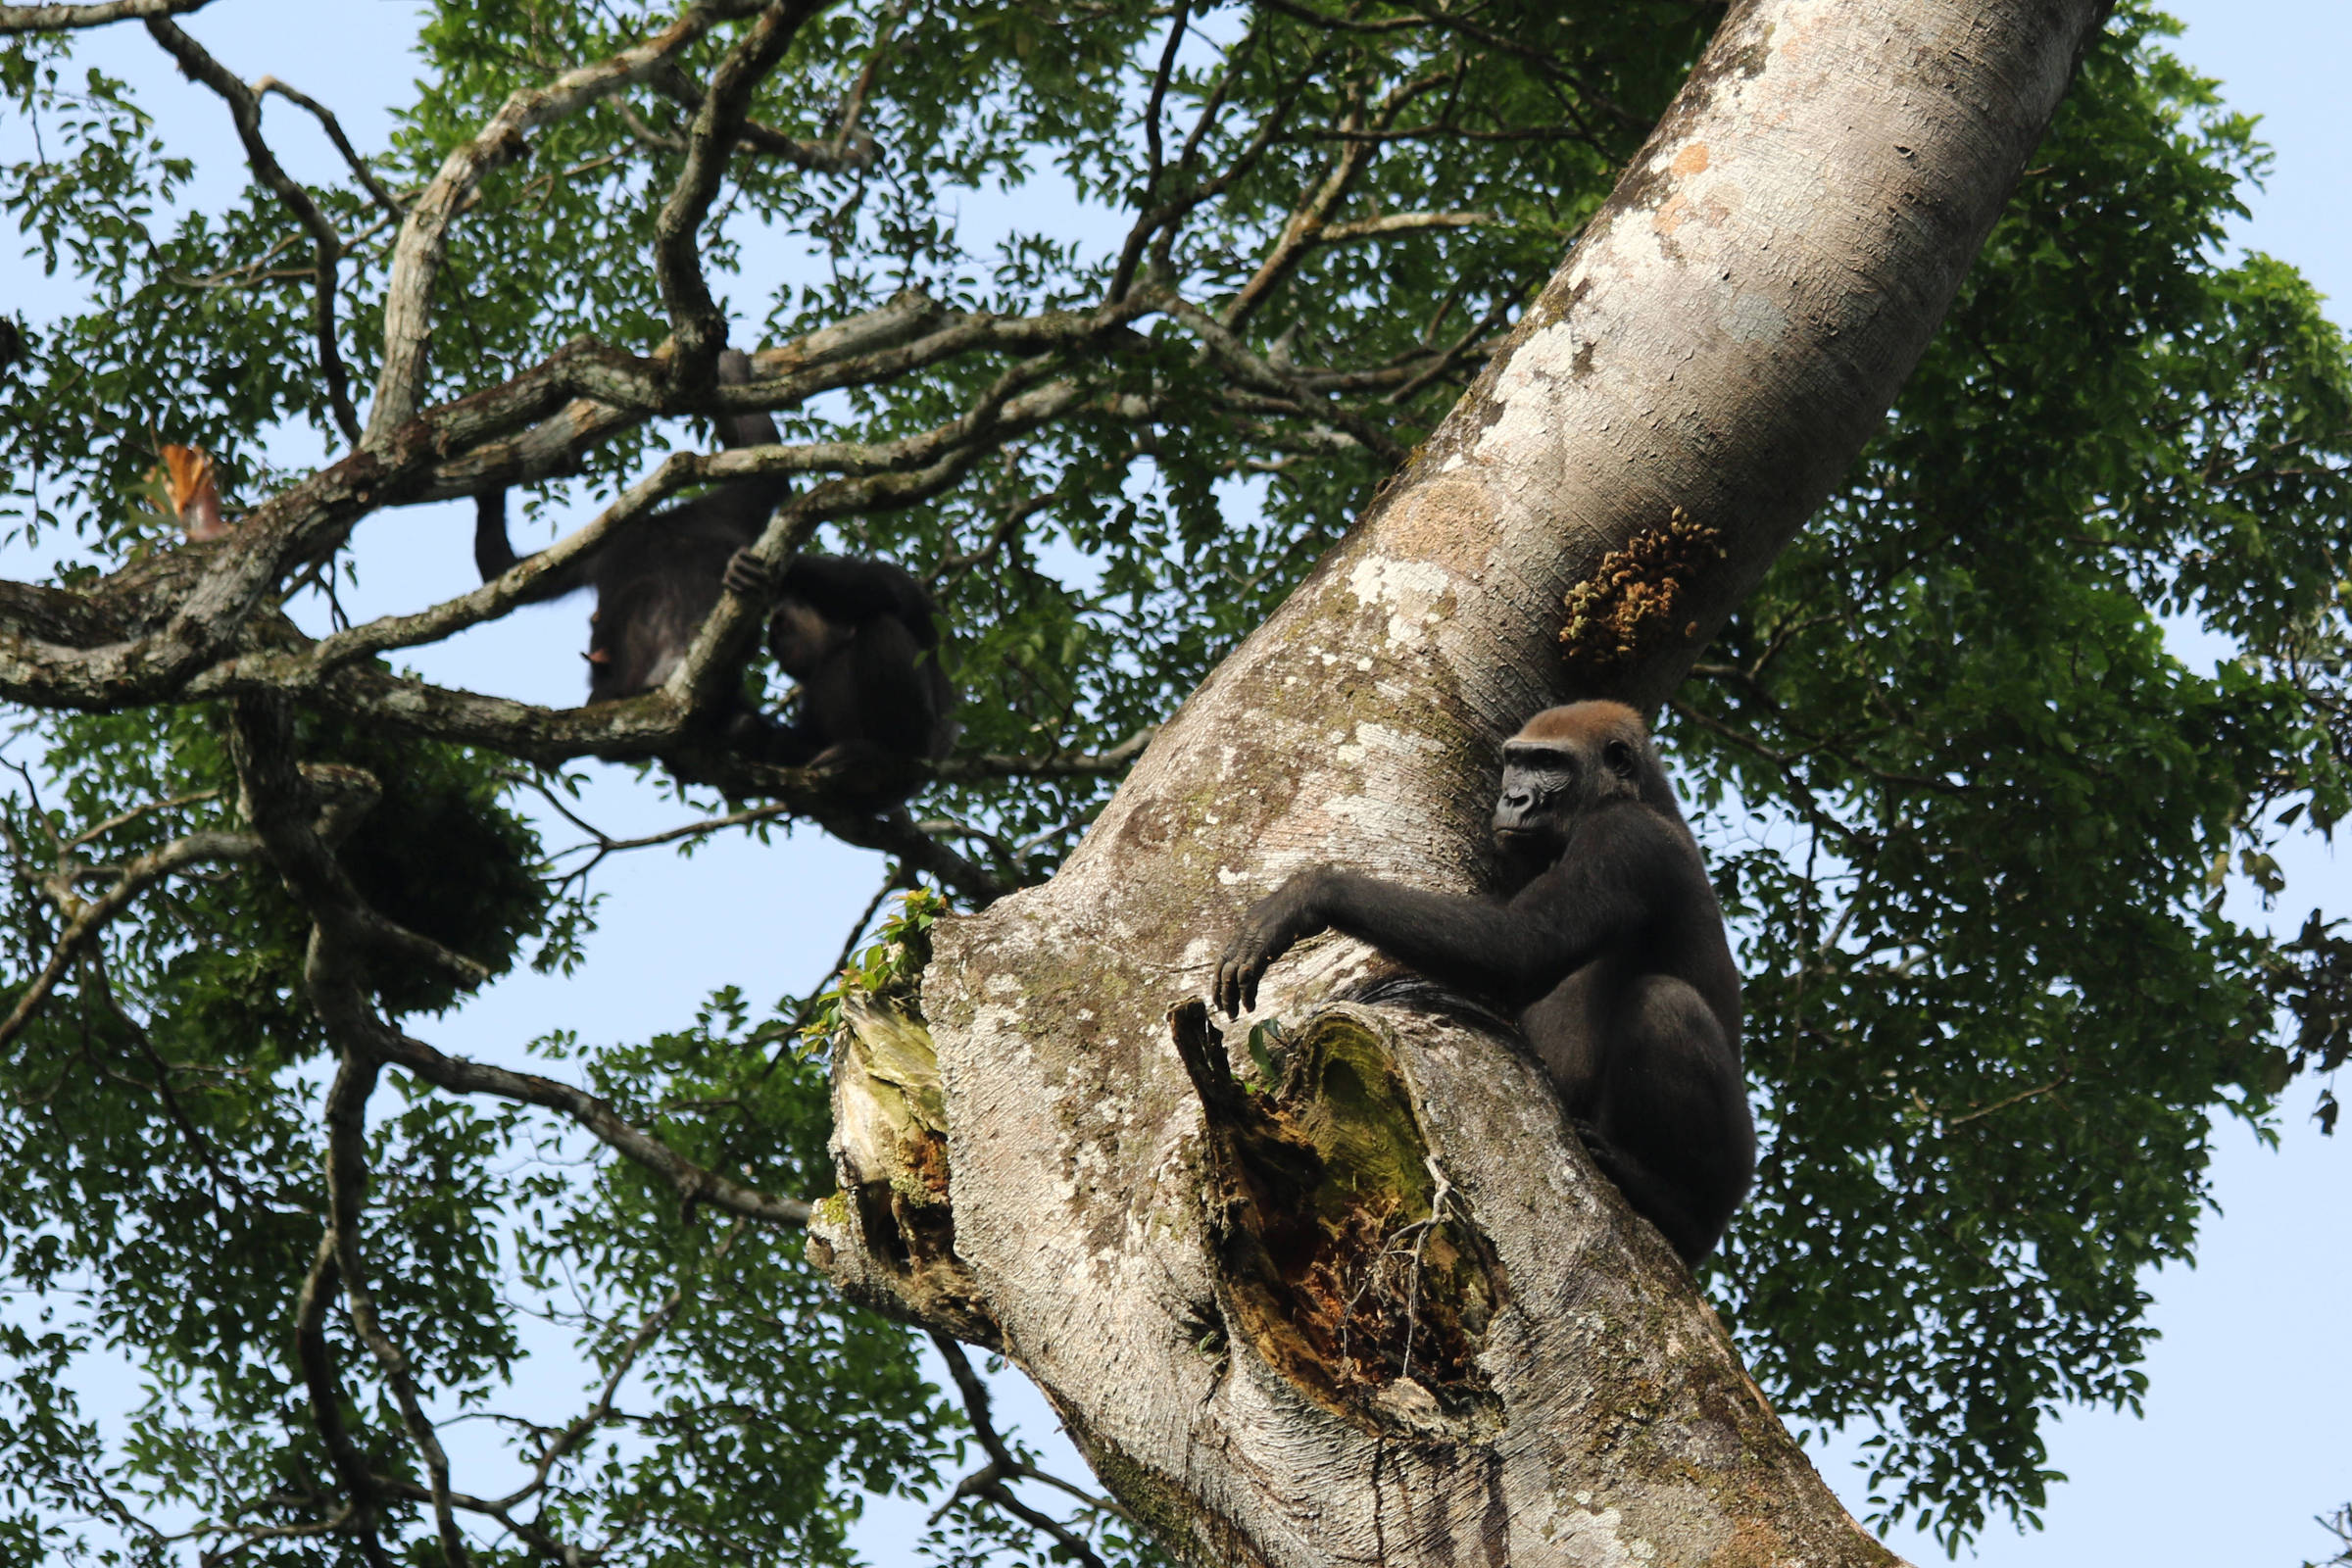 Regras de sobrevivência na selva selvagem gorila cidade rampage